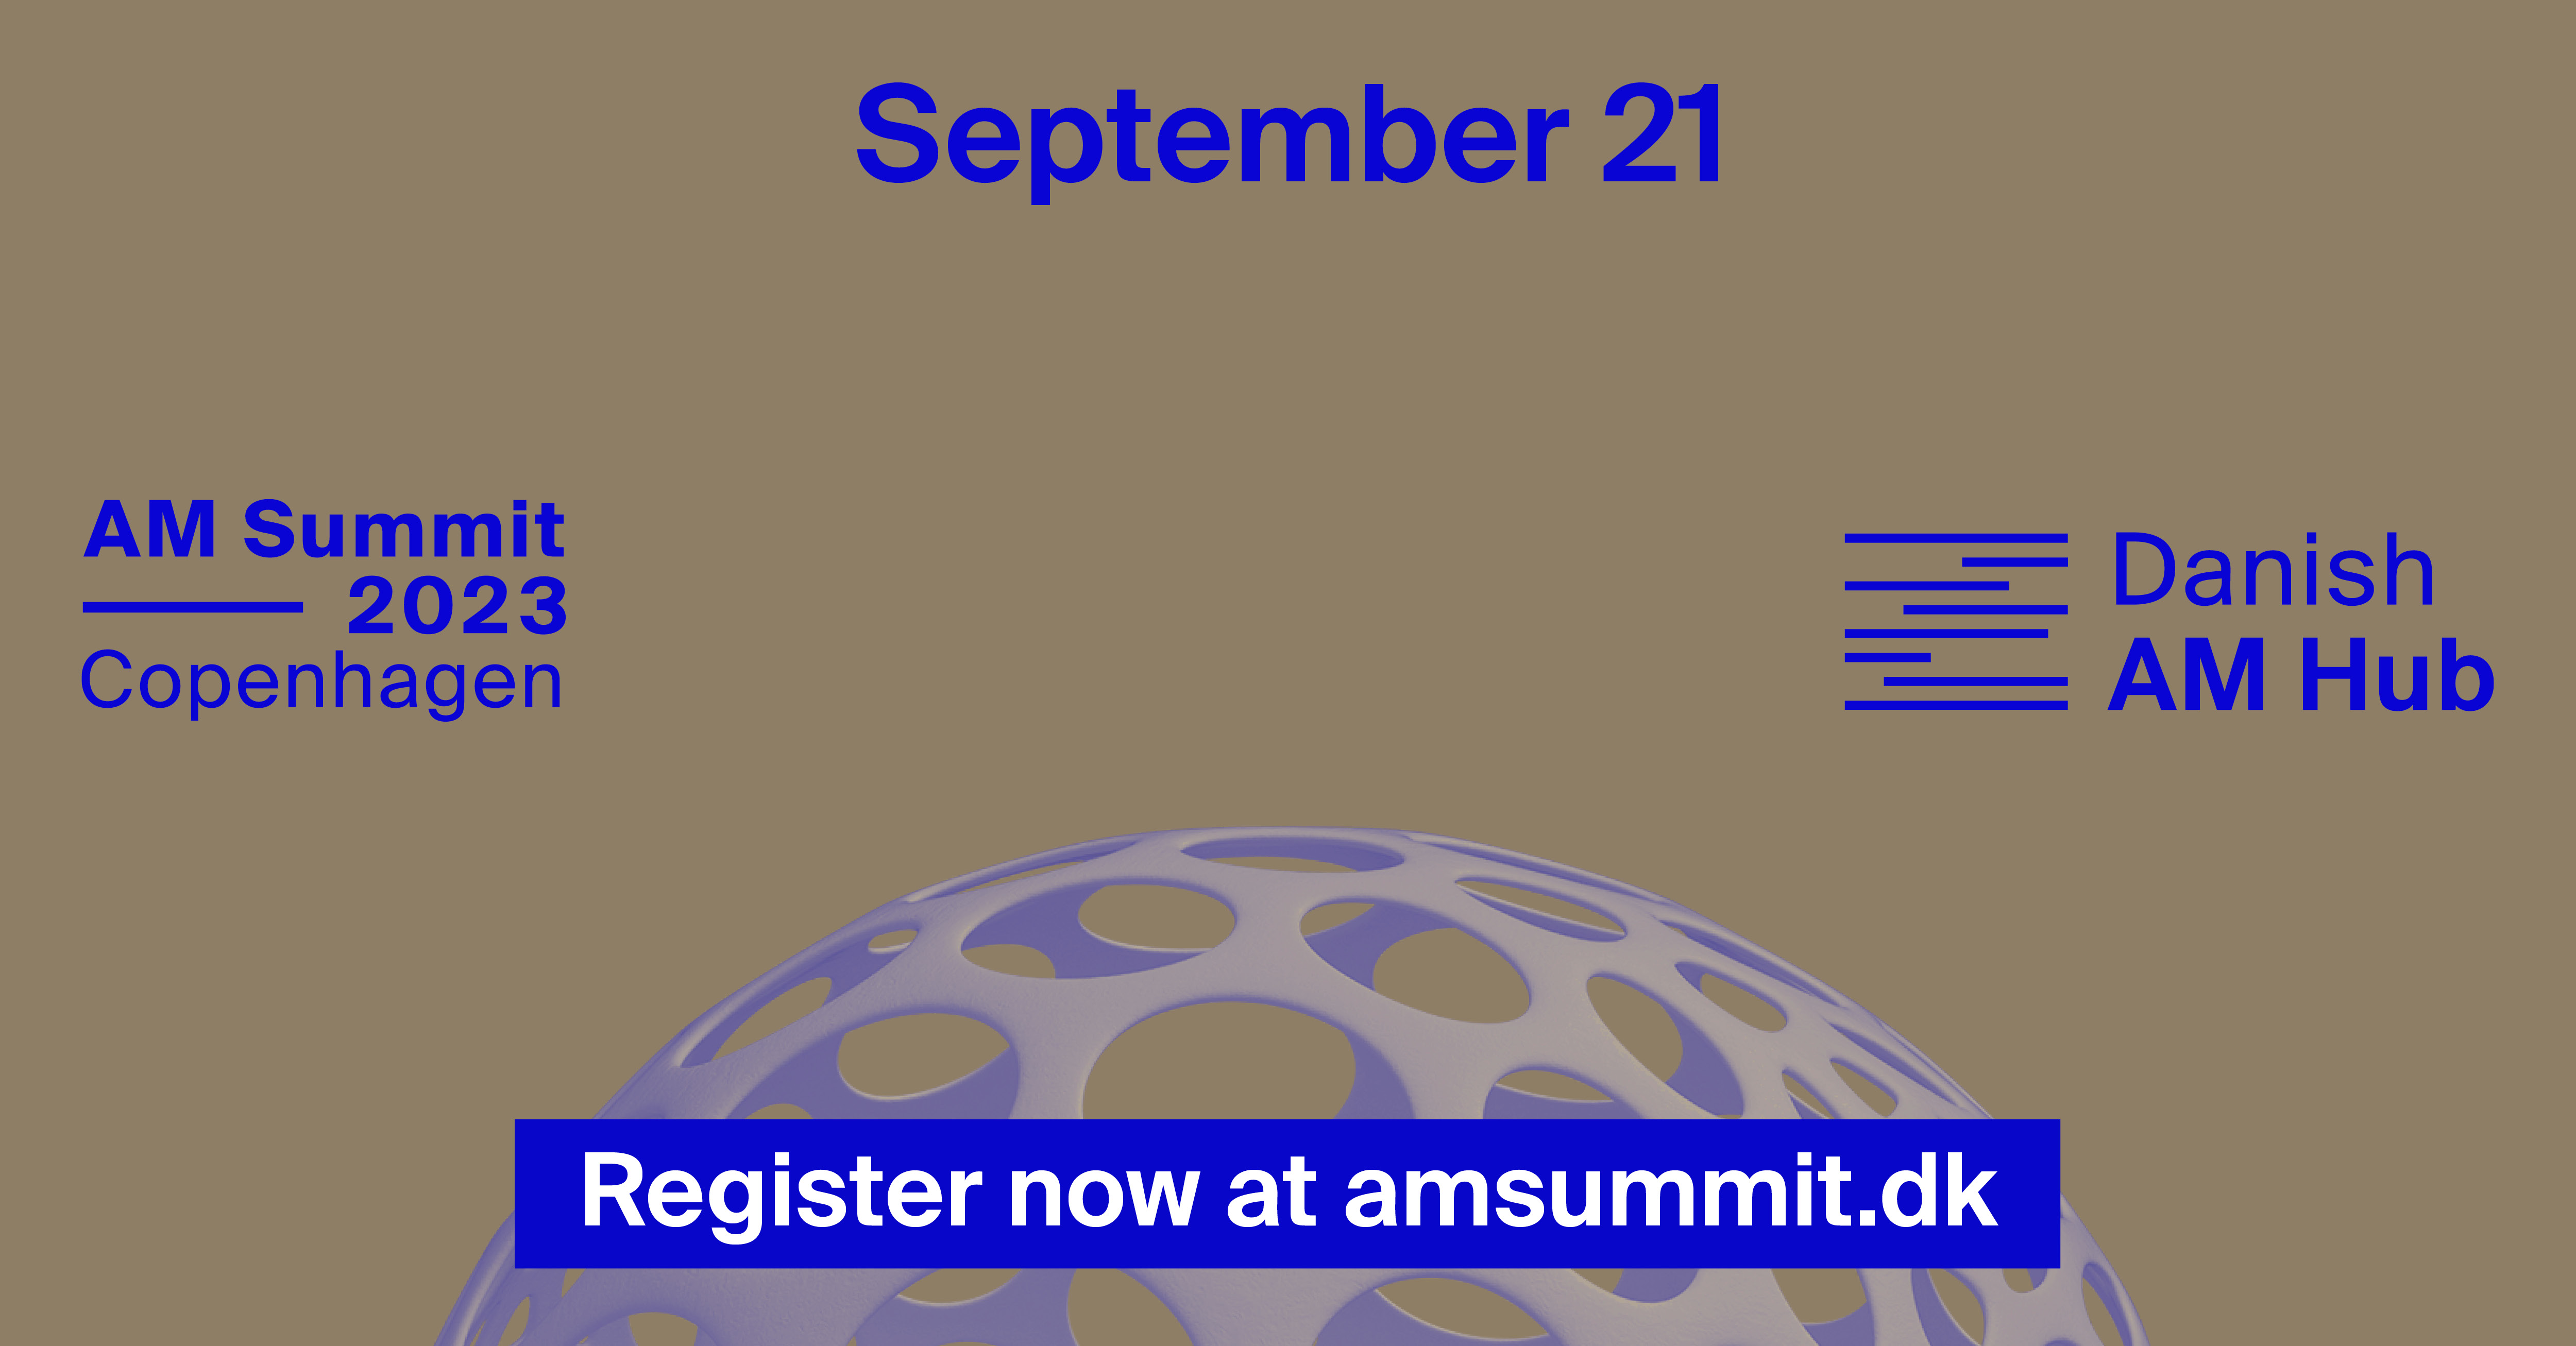 AM Summit 2023 - Get a 50% IDA discount